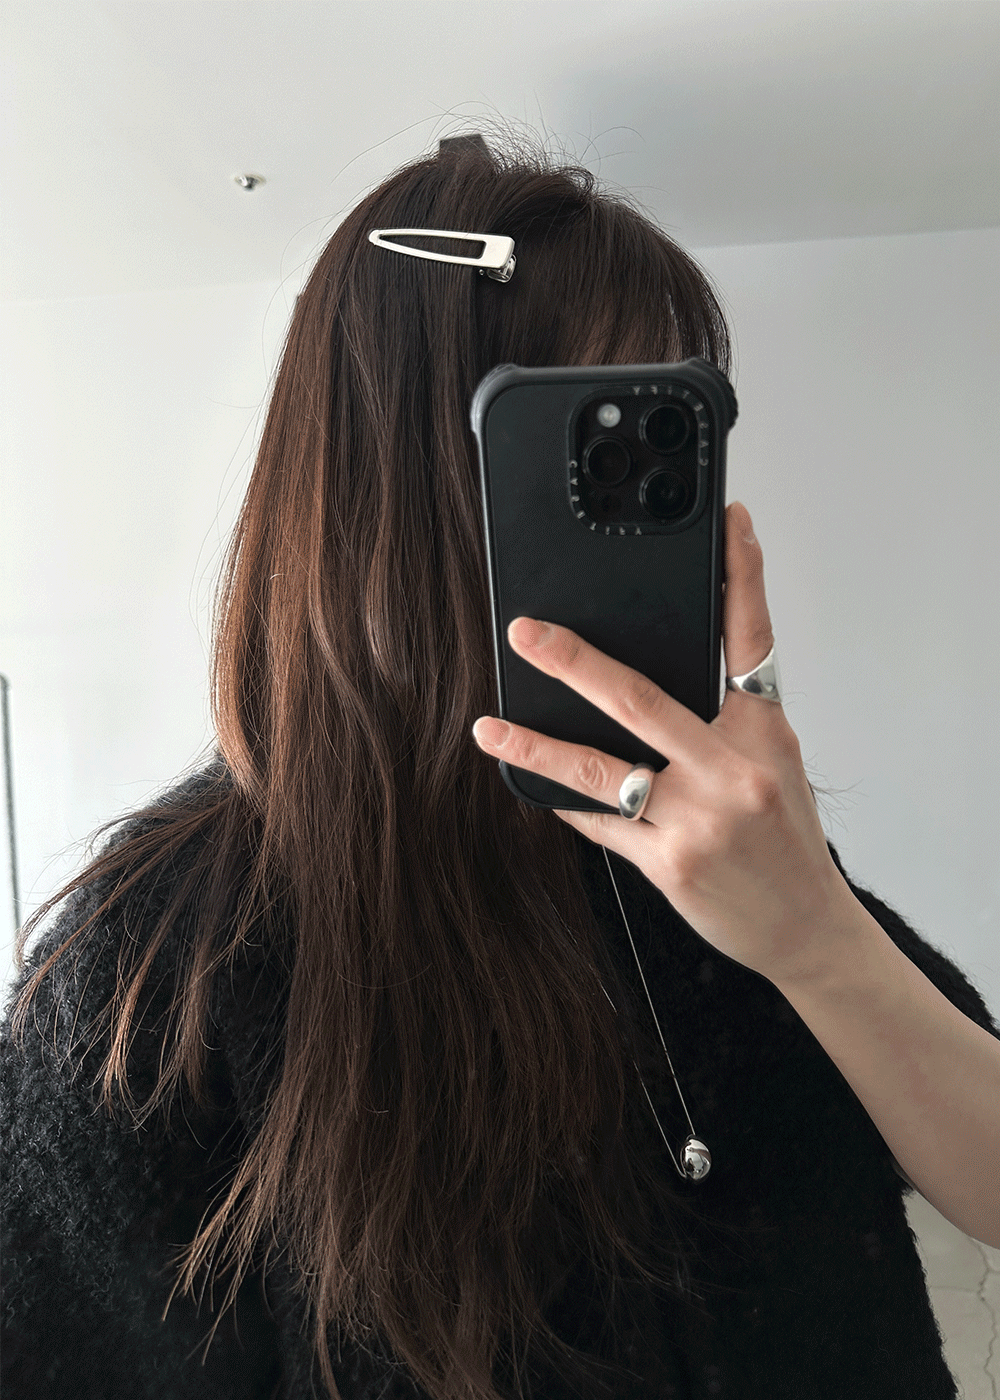 Silver hair clip